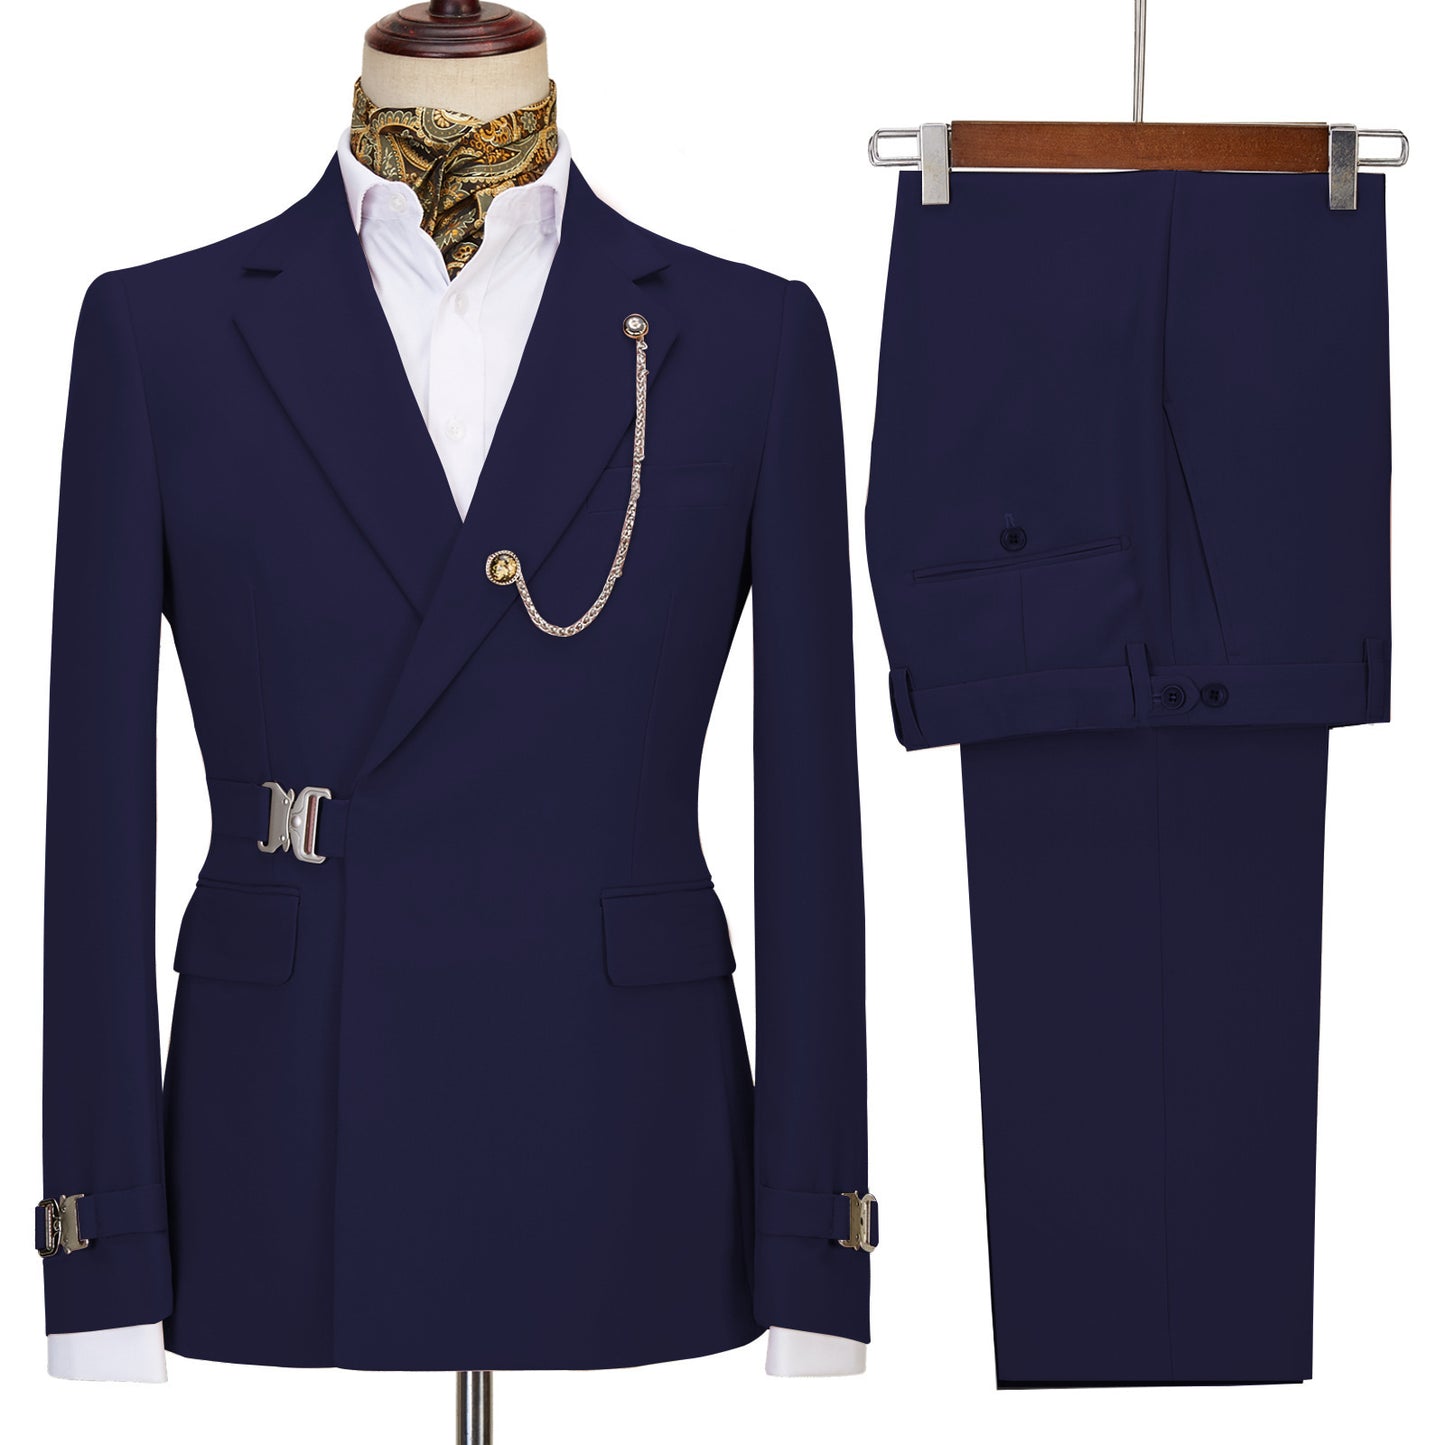 Men's Light Business Fashion Casual Suit